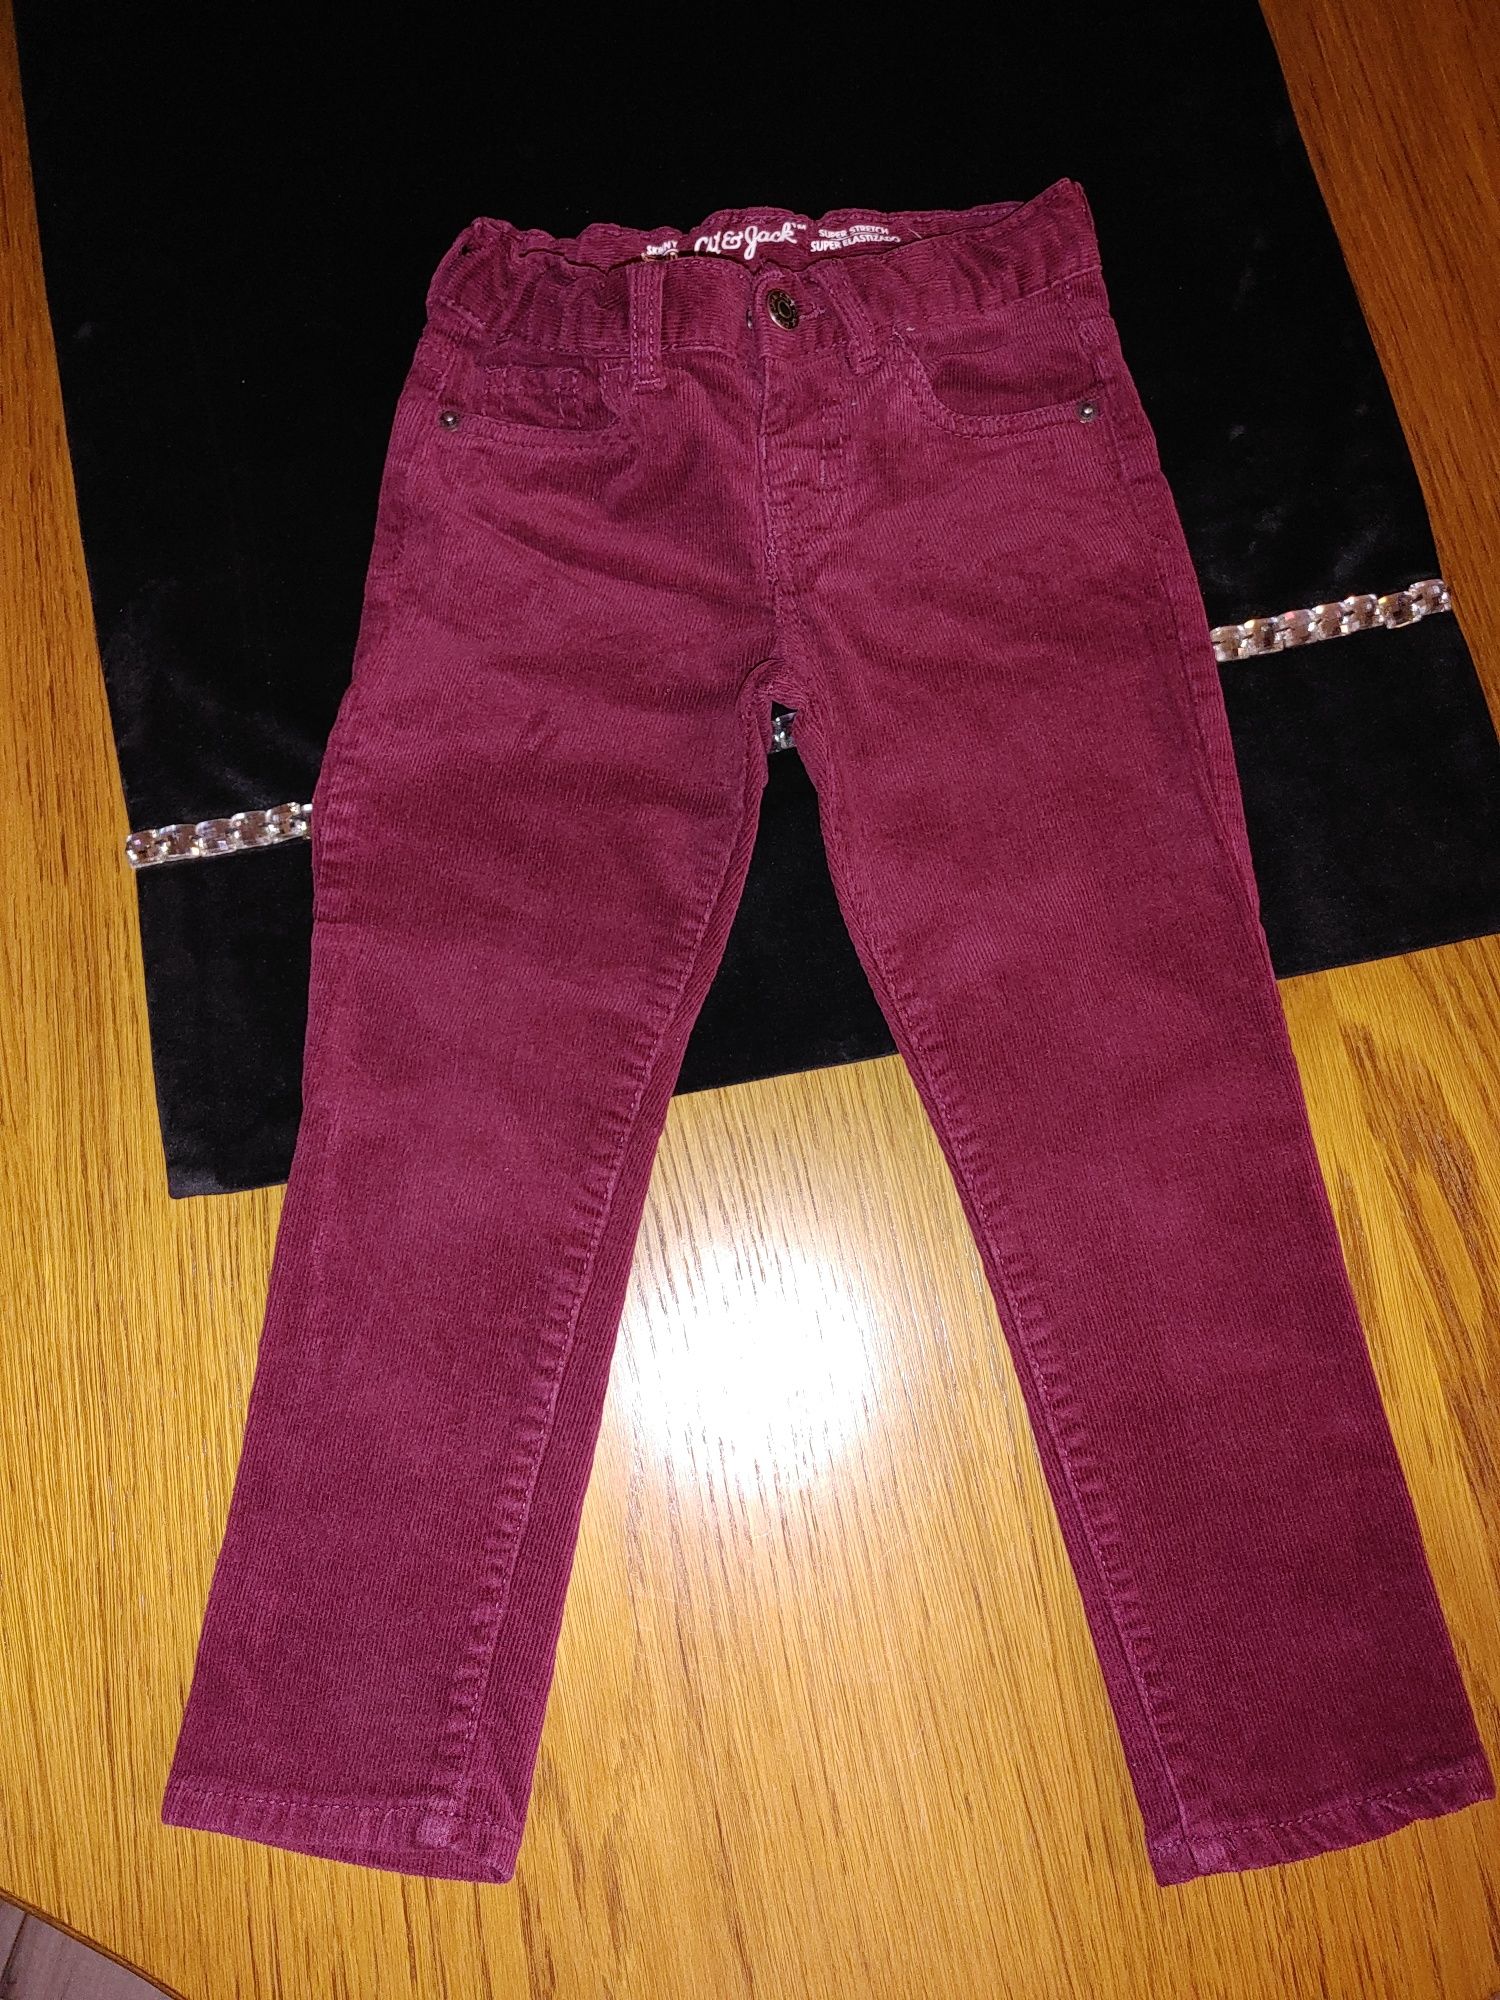 Spodnie bordowe 98/104 bordo chłopięce